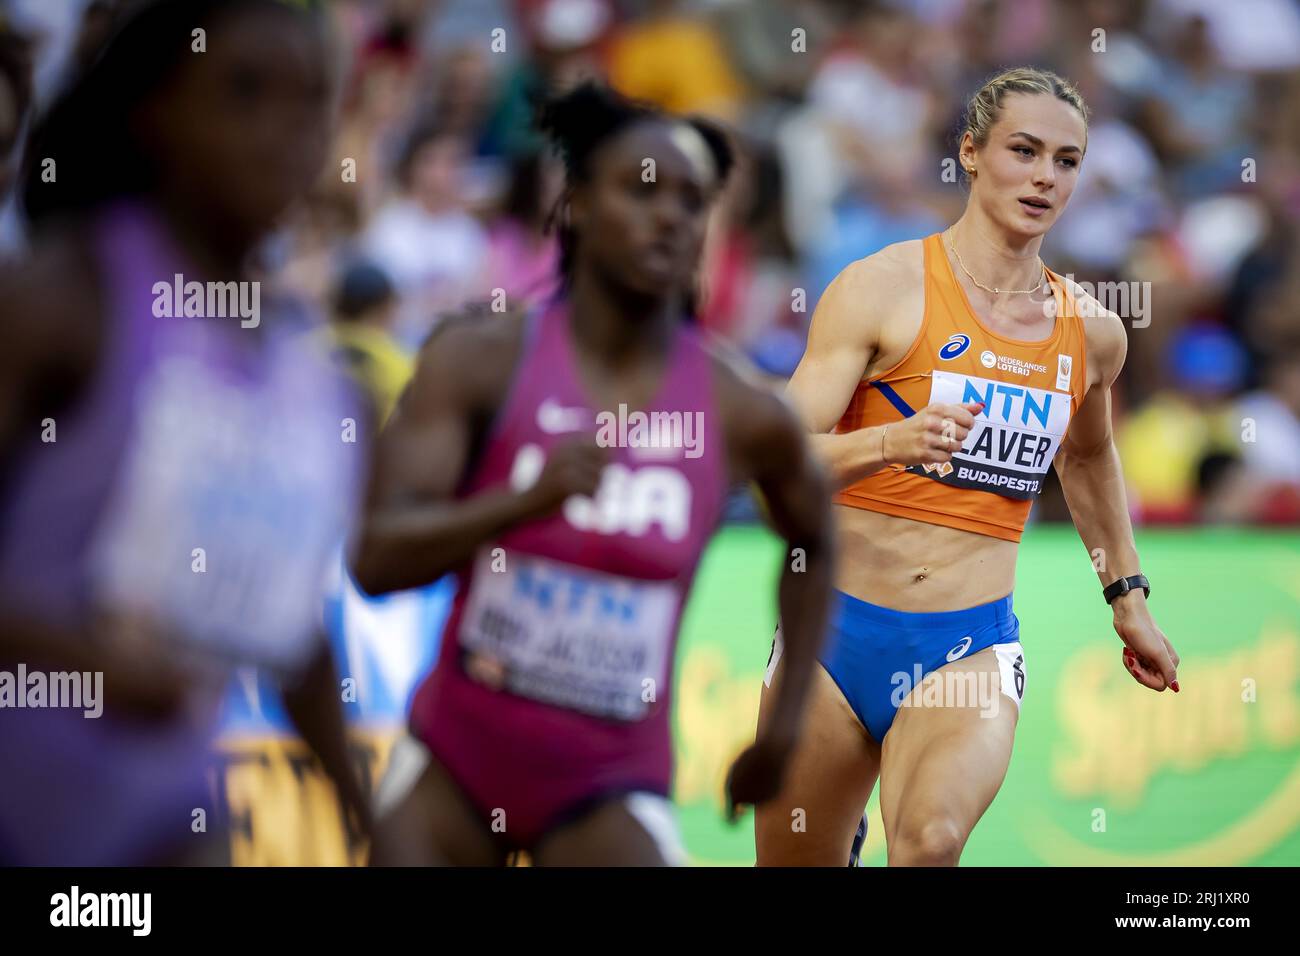 BUDAPEST - Lieke Klaver in azione sui 400 metri durante la seconda giornata dei Campionati mondiali di atletica leggera. ANP ROBIN VAN LONKHUIJSEN Foto Stock